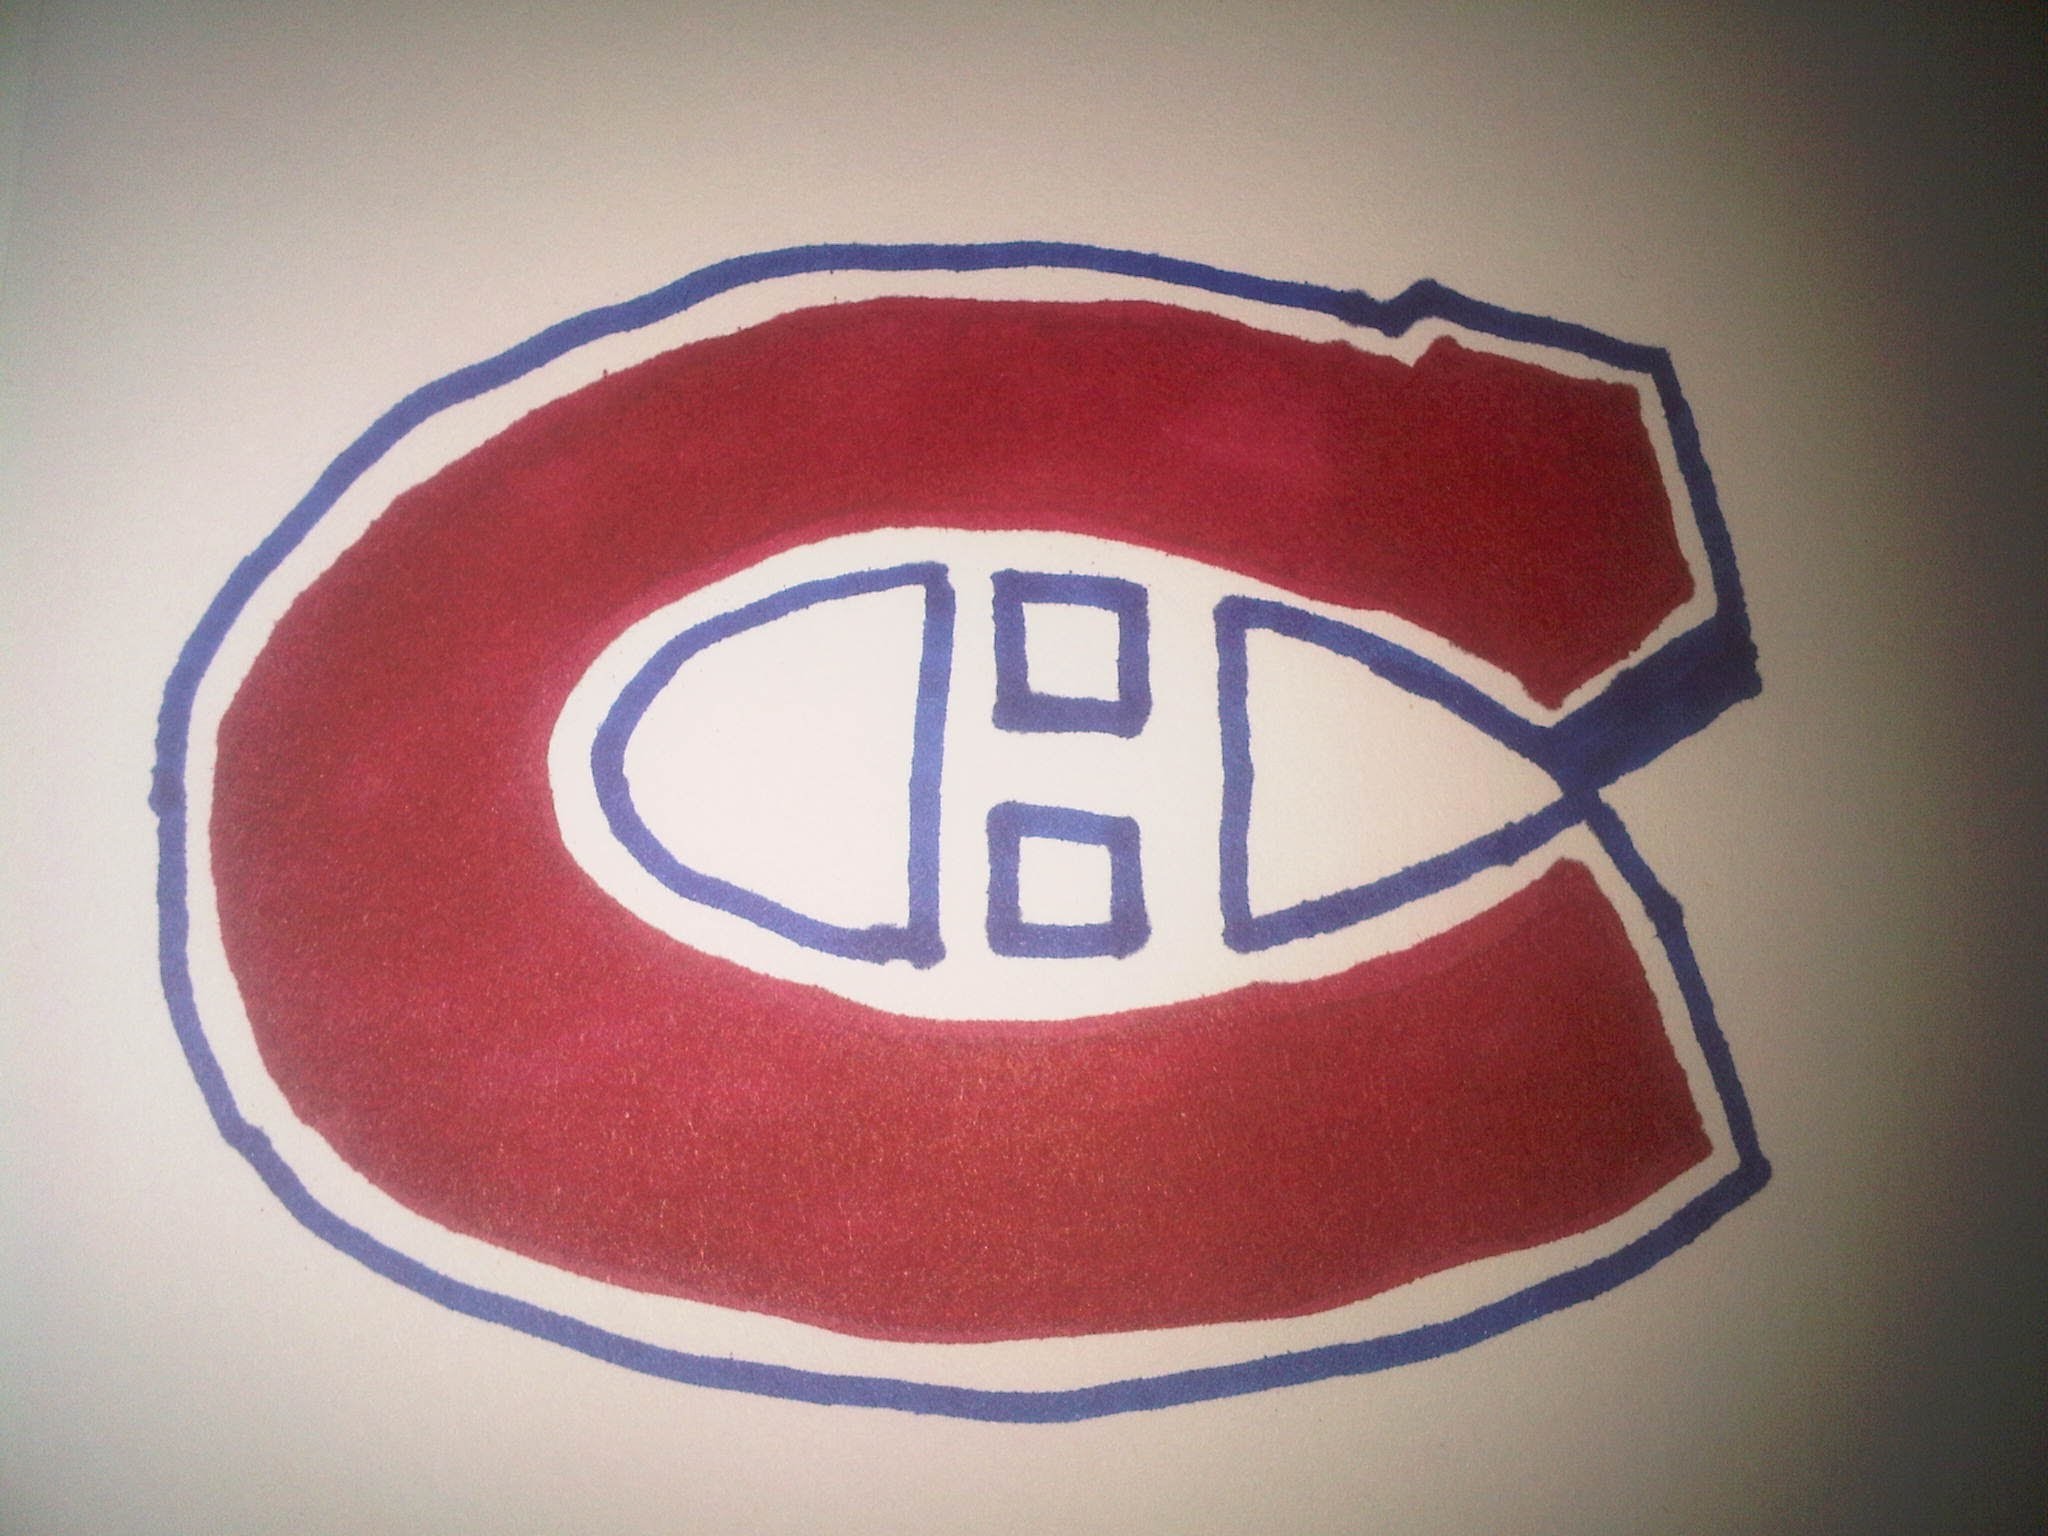 2048x1536 How to Draw the MontrÃ©al Canadiens logo (Comment Dessiner le logo des  Canadiens de MontrÃ©al) - YouTube